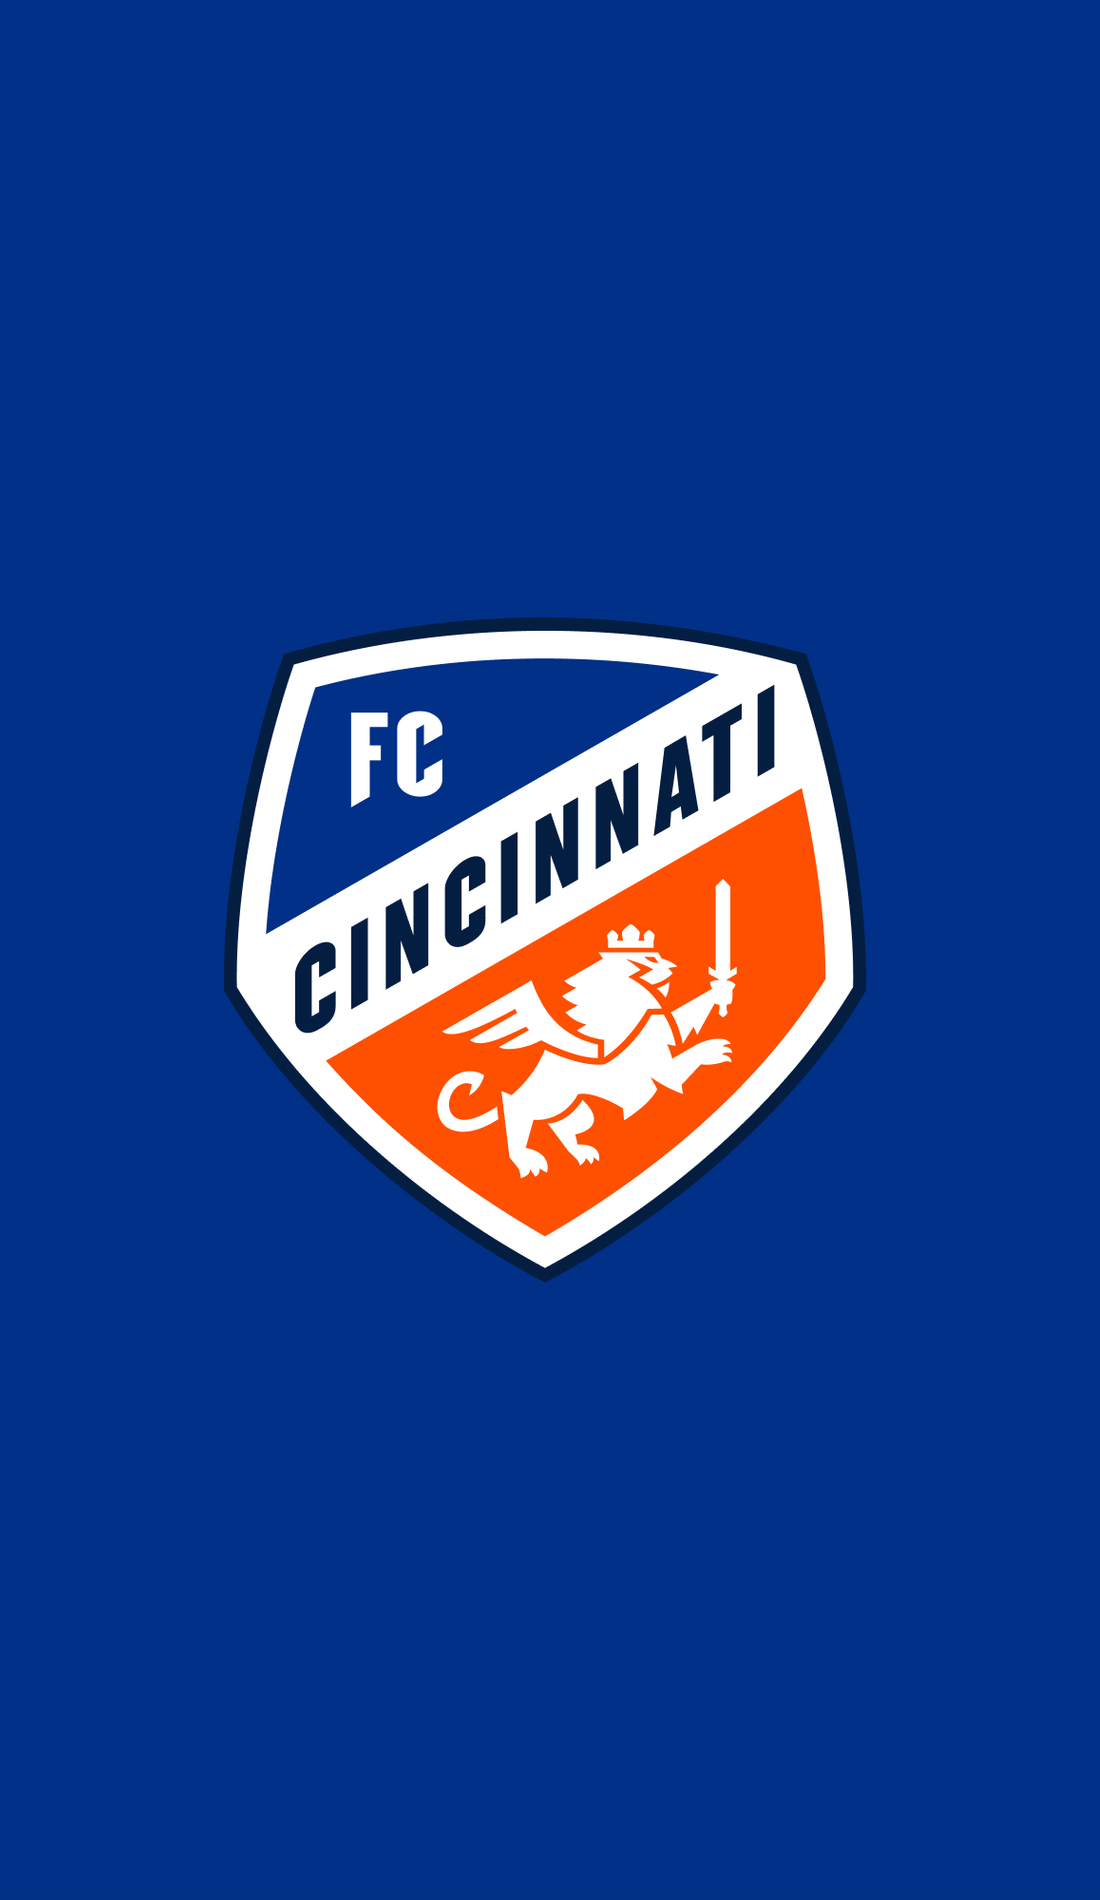 A FC Cincinnati live event